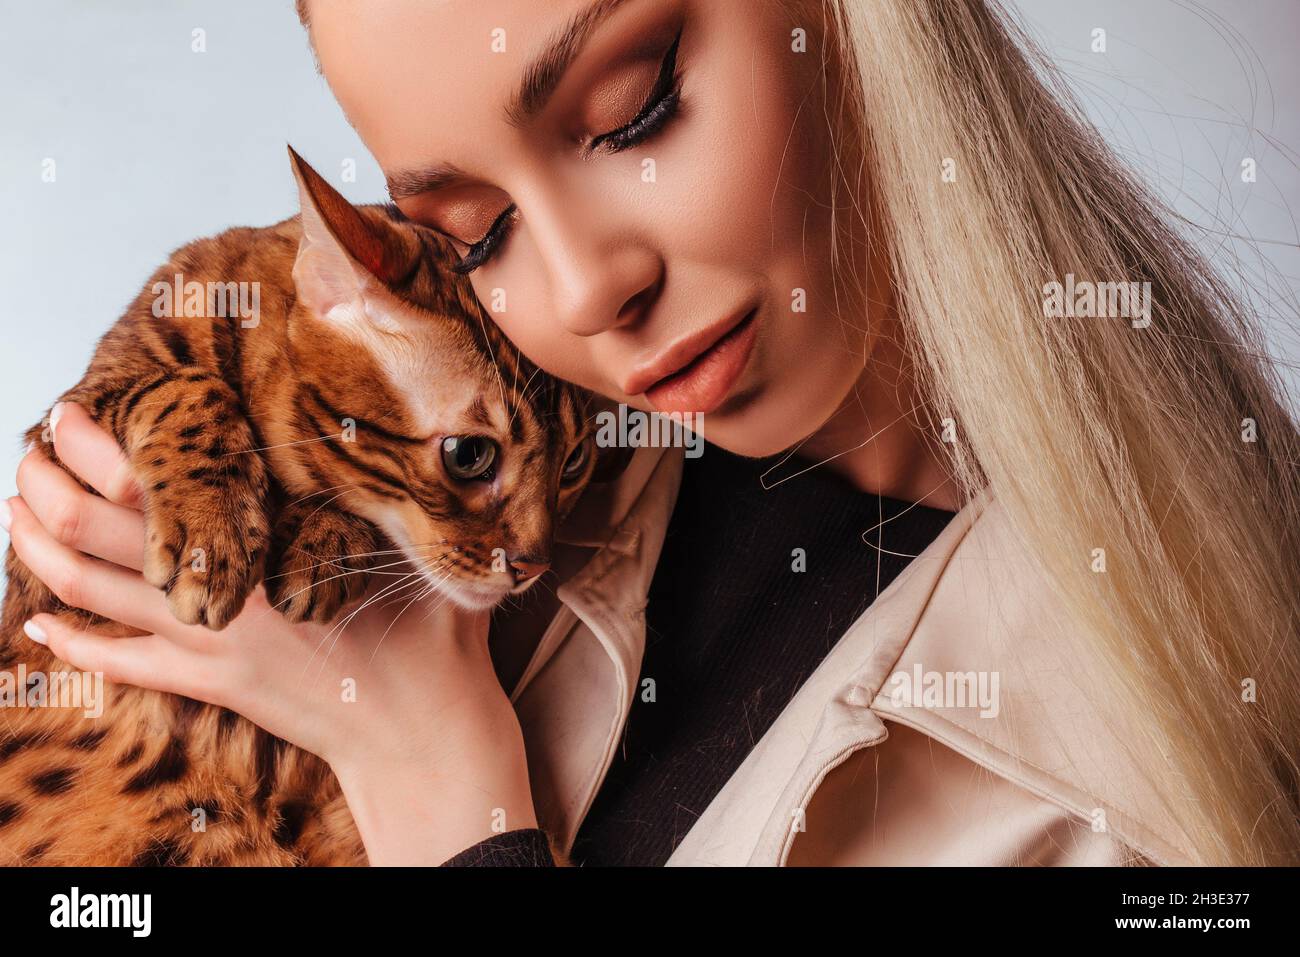 Portrait d'une jolie jeune femme blonde avec un chat bengale.Belle fille, regarde le chat, coiffure élégante, maquillage impudent, blanc Banque D'Images